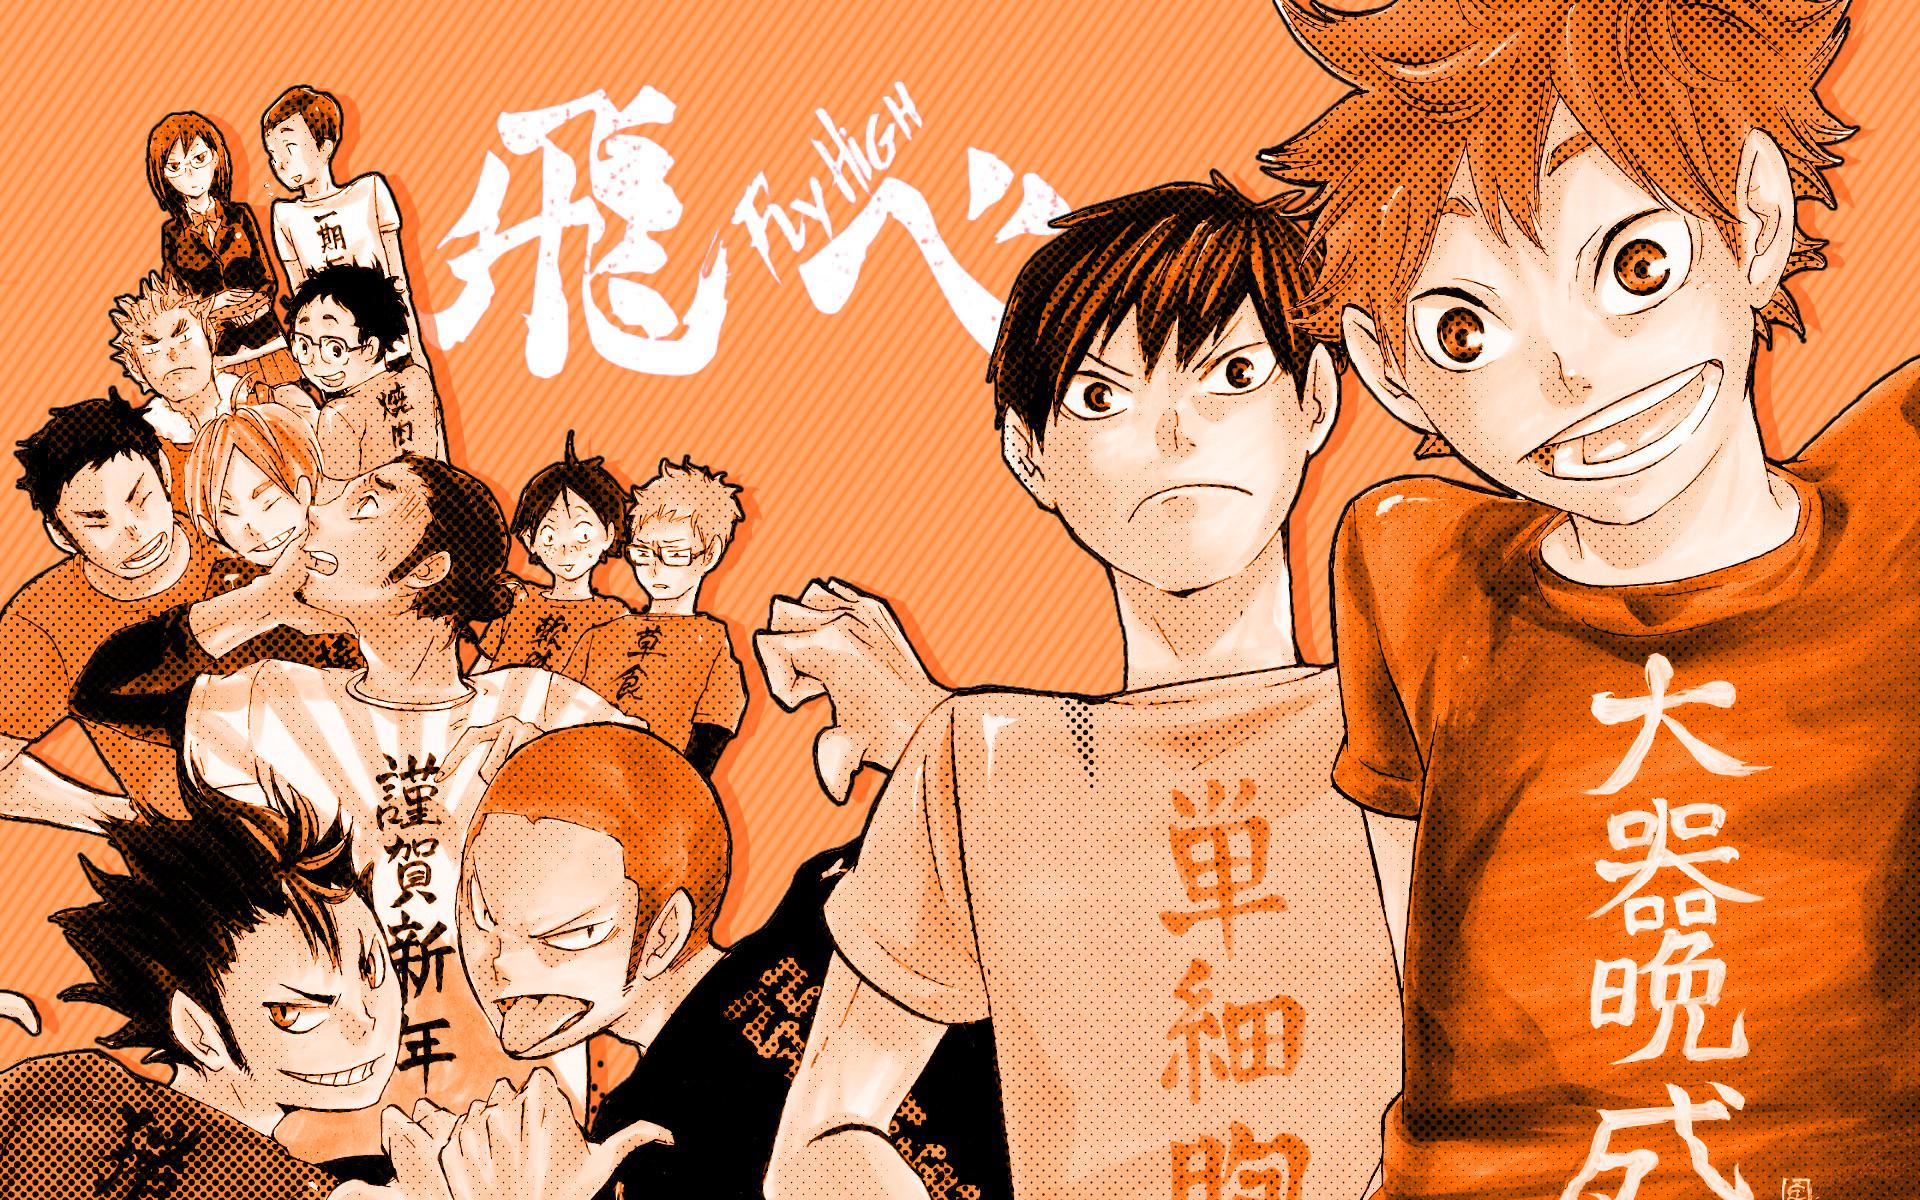 Haikyuu Manga Desktop Wallpapers Wallpaper Cave